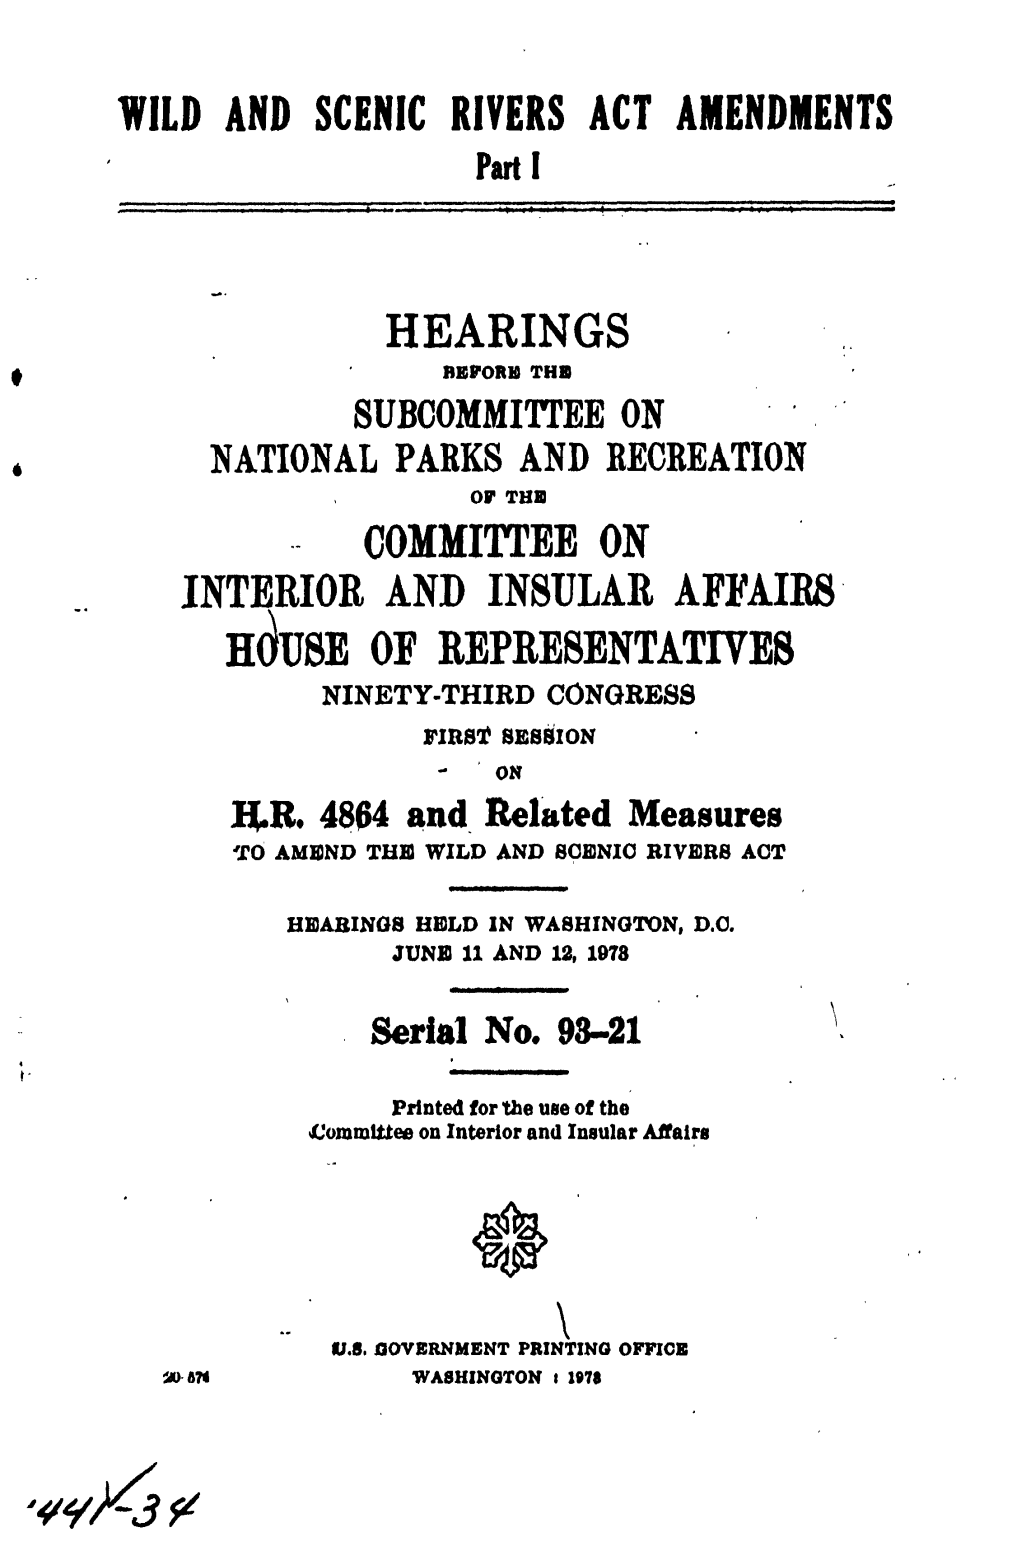 HR 4864, House Hearings, June 11 & 12, 1973